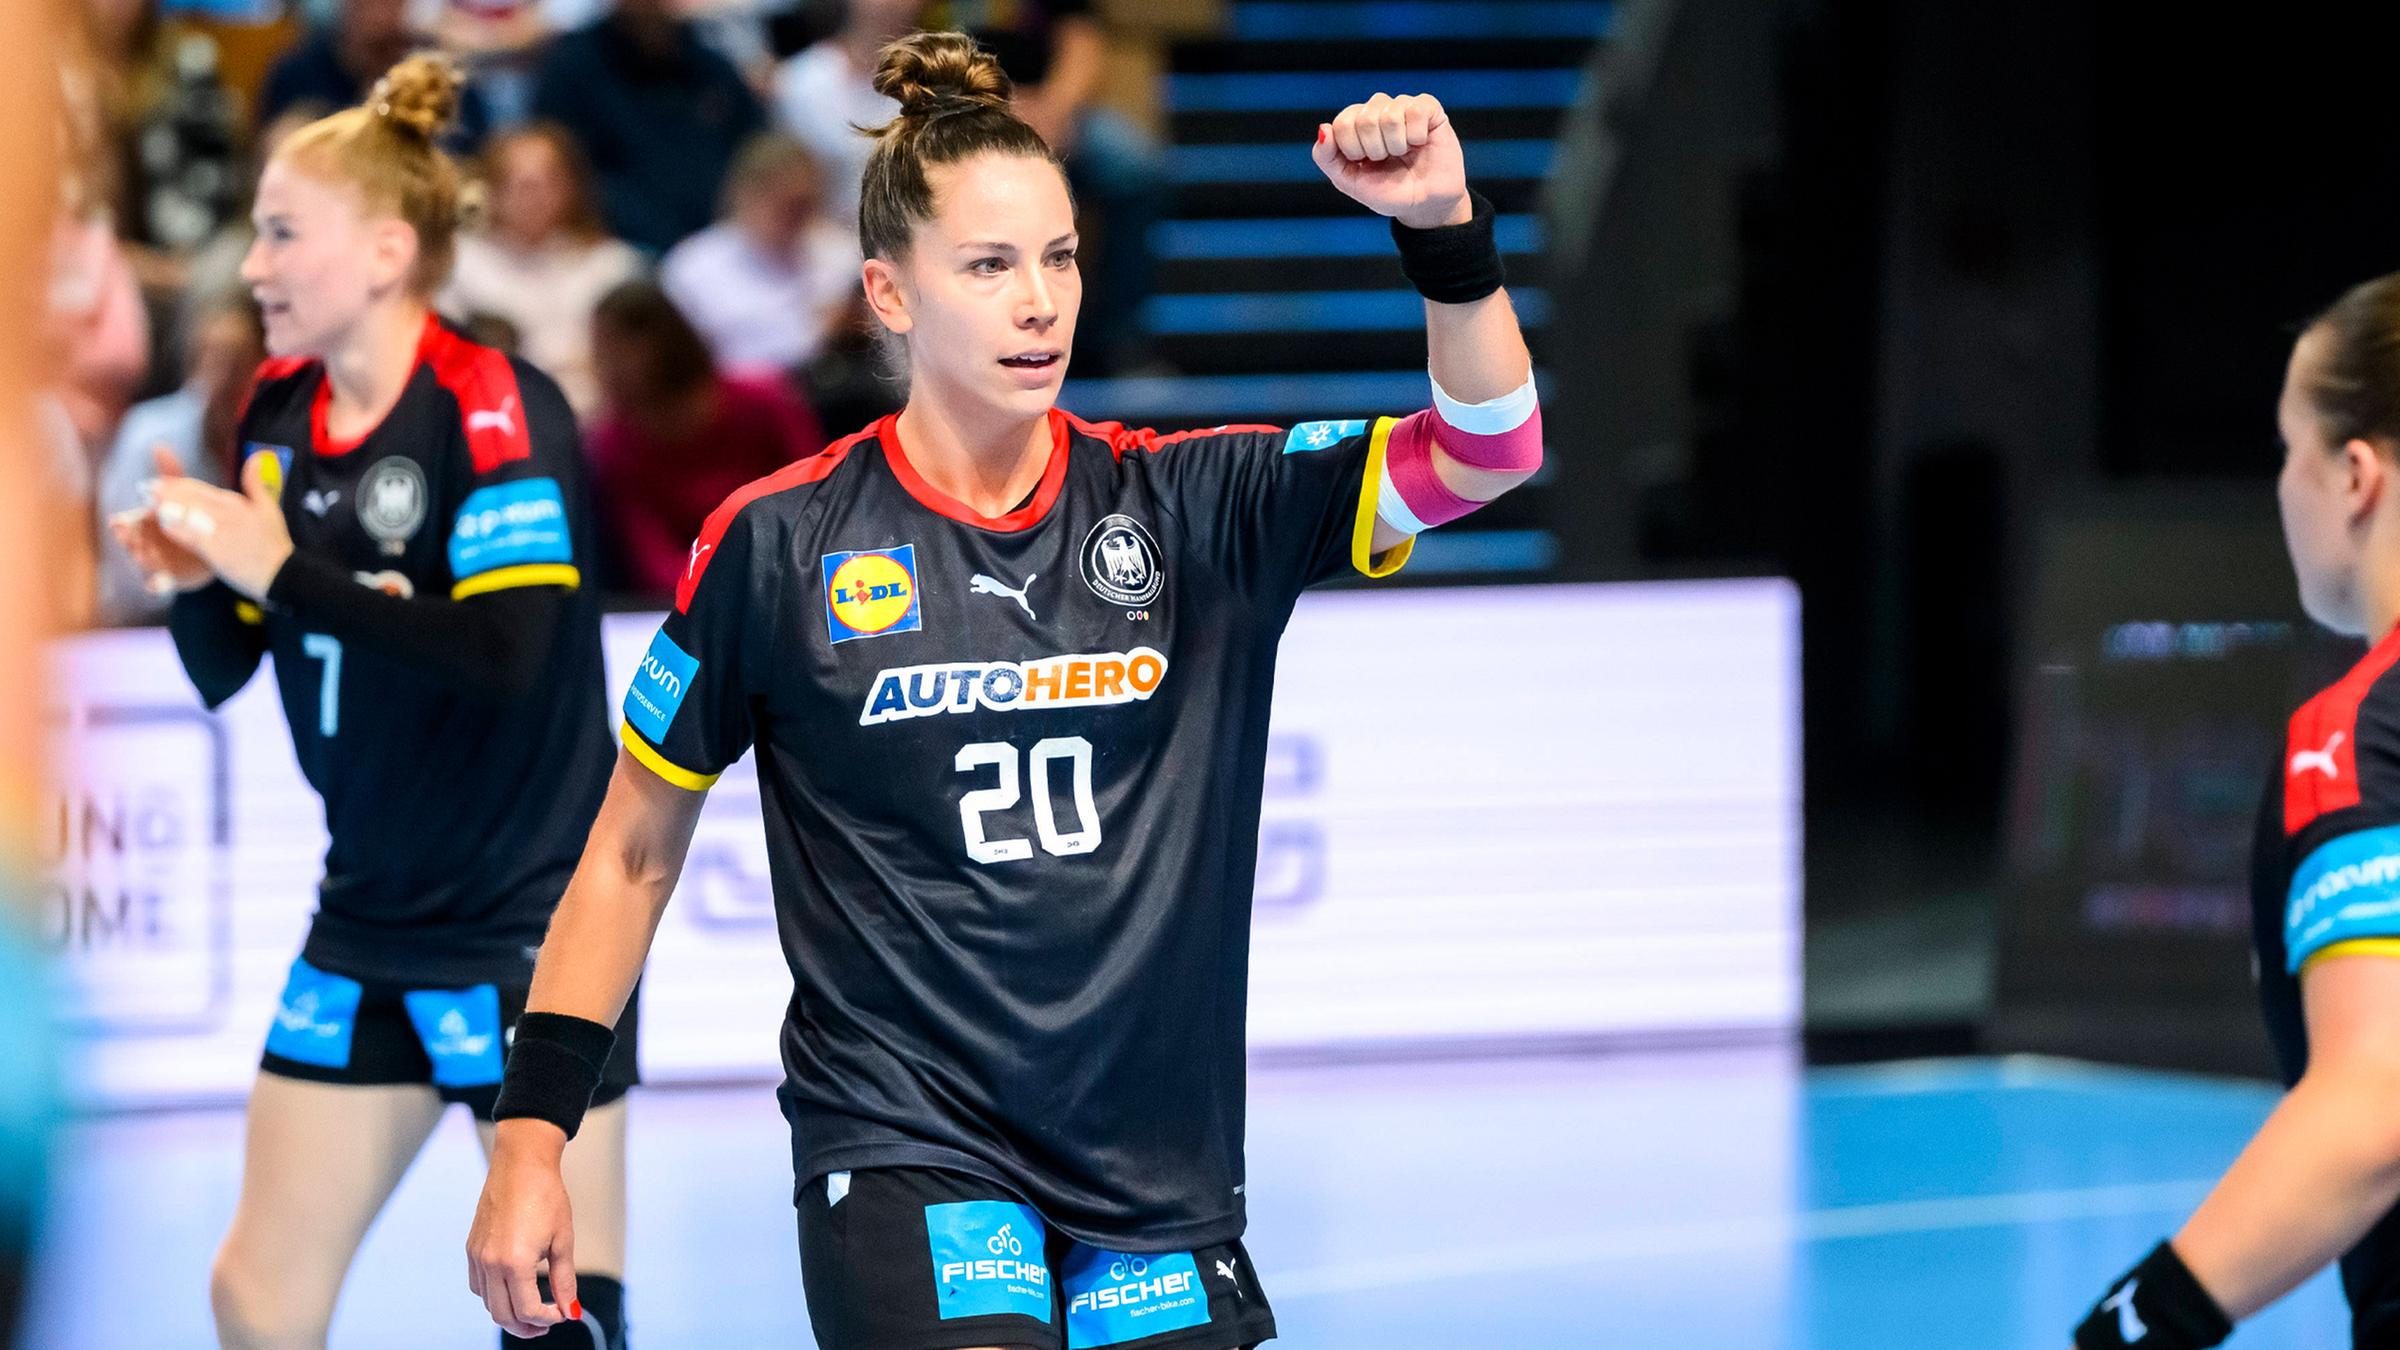 Turnierauftakt der Handball-Frauen - eine WM, zwei Ziele